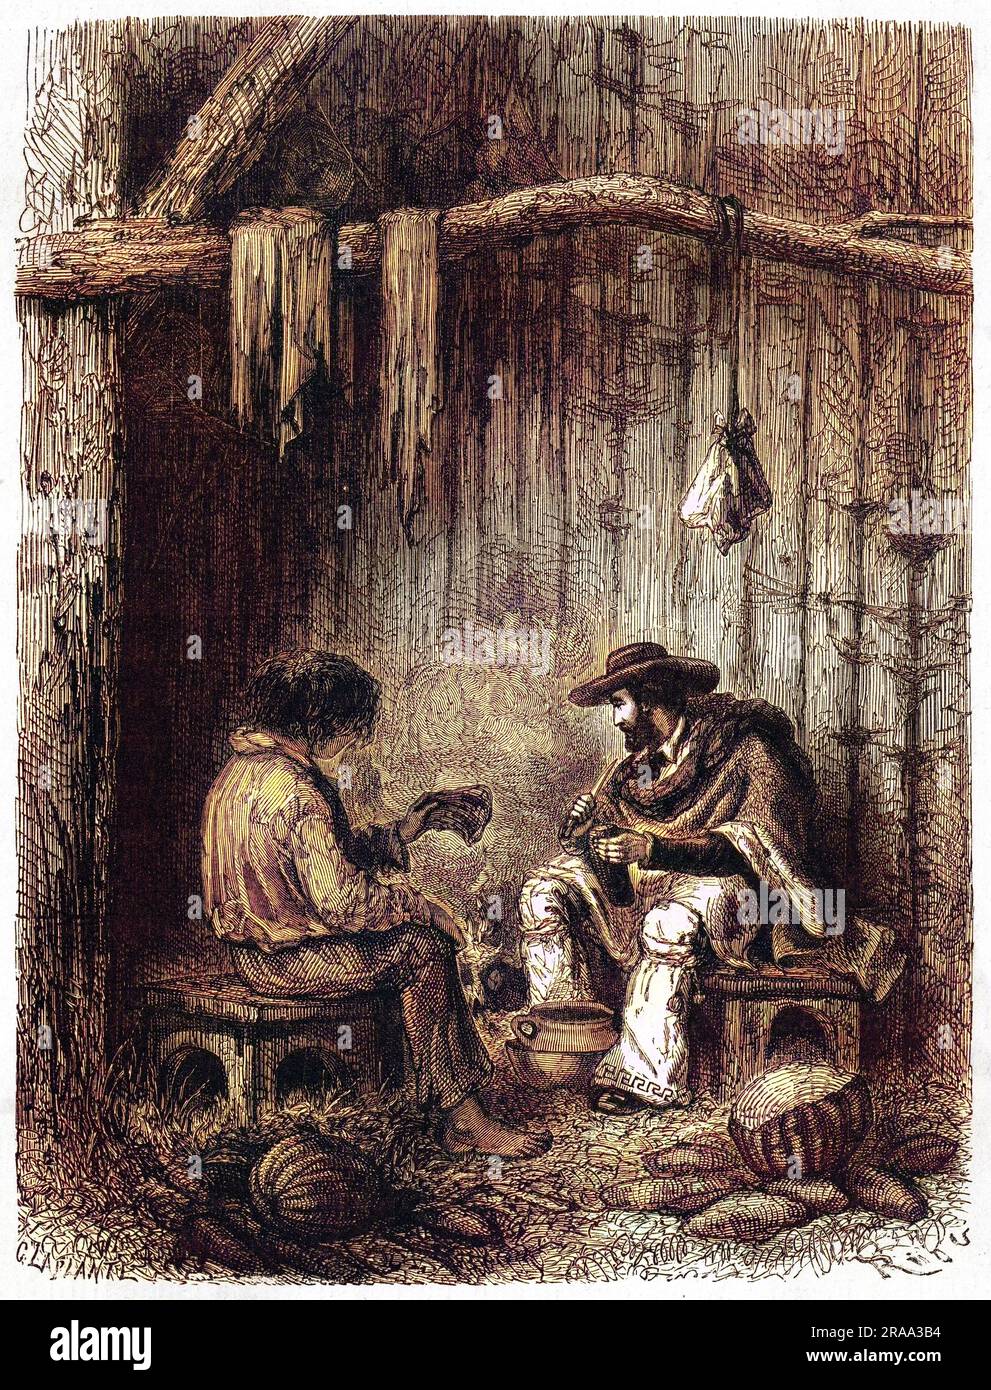 LAURENT DE SAINT-CRICQ (nom-de-plume PAUL MARCOY) voyageur français en Amérique du Sud et dans le Pacifique, a représenté la préparation d'une soupe au cours de son voyage. Date: 1840s-1860s Banque D'Images